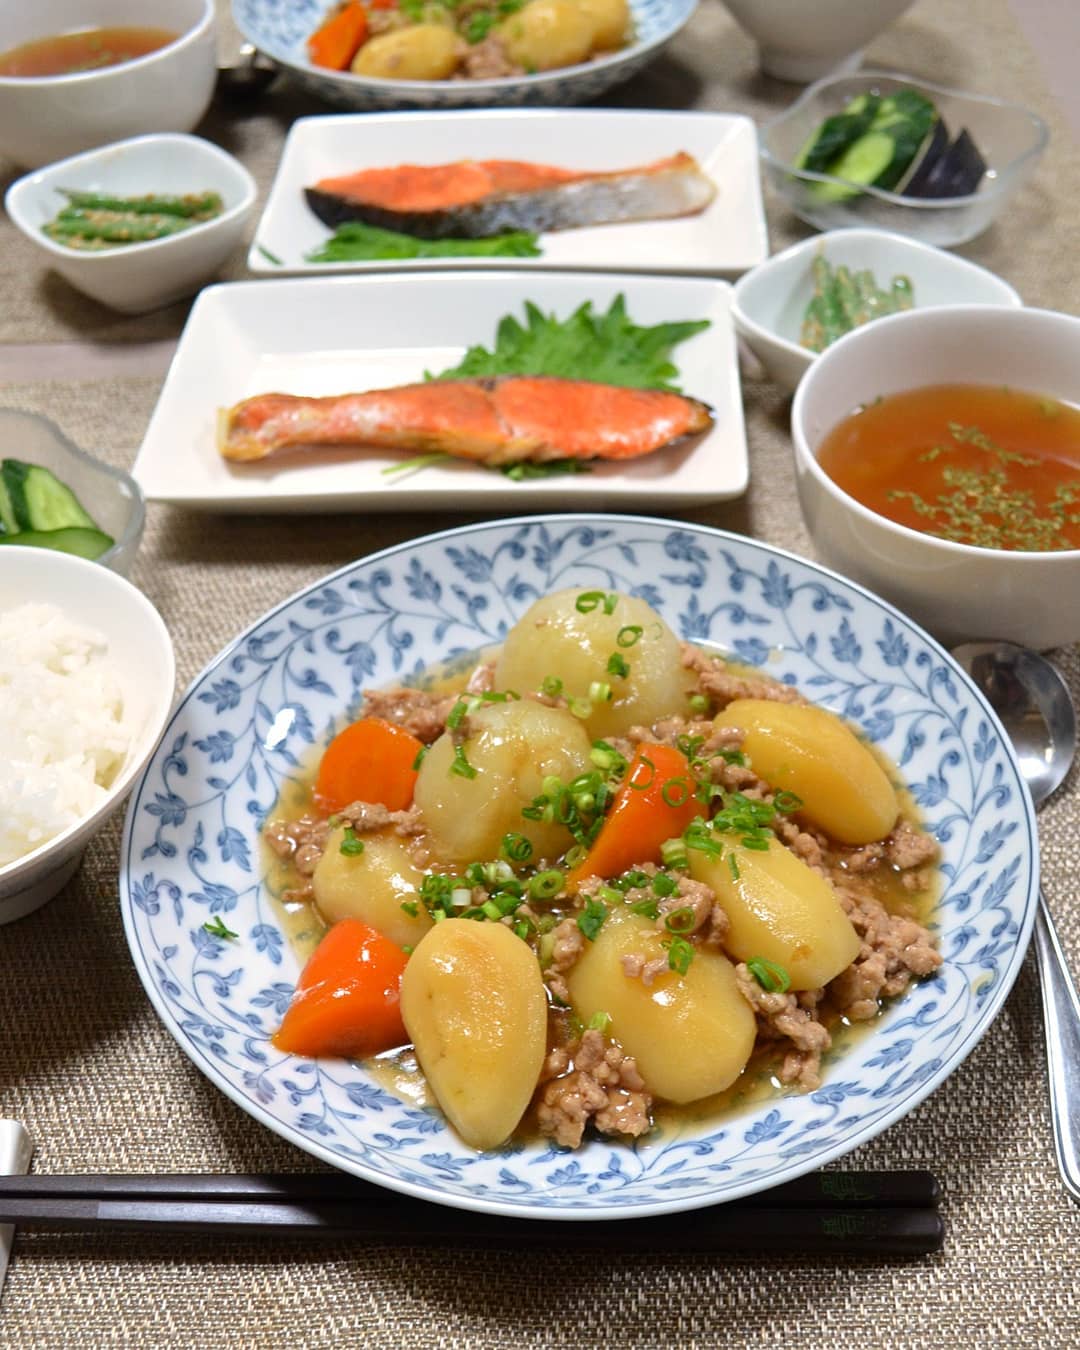 Đây là tên gọi của món bò hầm đơn giản, món này nóng hổi, hấp dẫn khi được ăn kèm với cơm trắng. Nikujaga có thể được phục vụ tại một quán ăn, nhà hàng trong suốt mùa đông tại Nhật Bản. Các nguyên liệu để chế biến món ăn này sẽ là sự kết hợp giữa thịt bò, cà rốt, khoai tây, đậu Hà Lan, hành tây, nước tương, dashi, mirin, đường, rượu sake.  - Ảnh: akikowolff